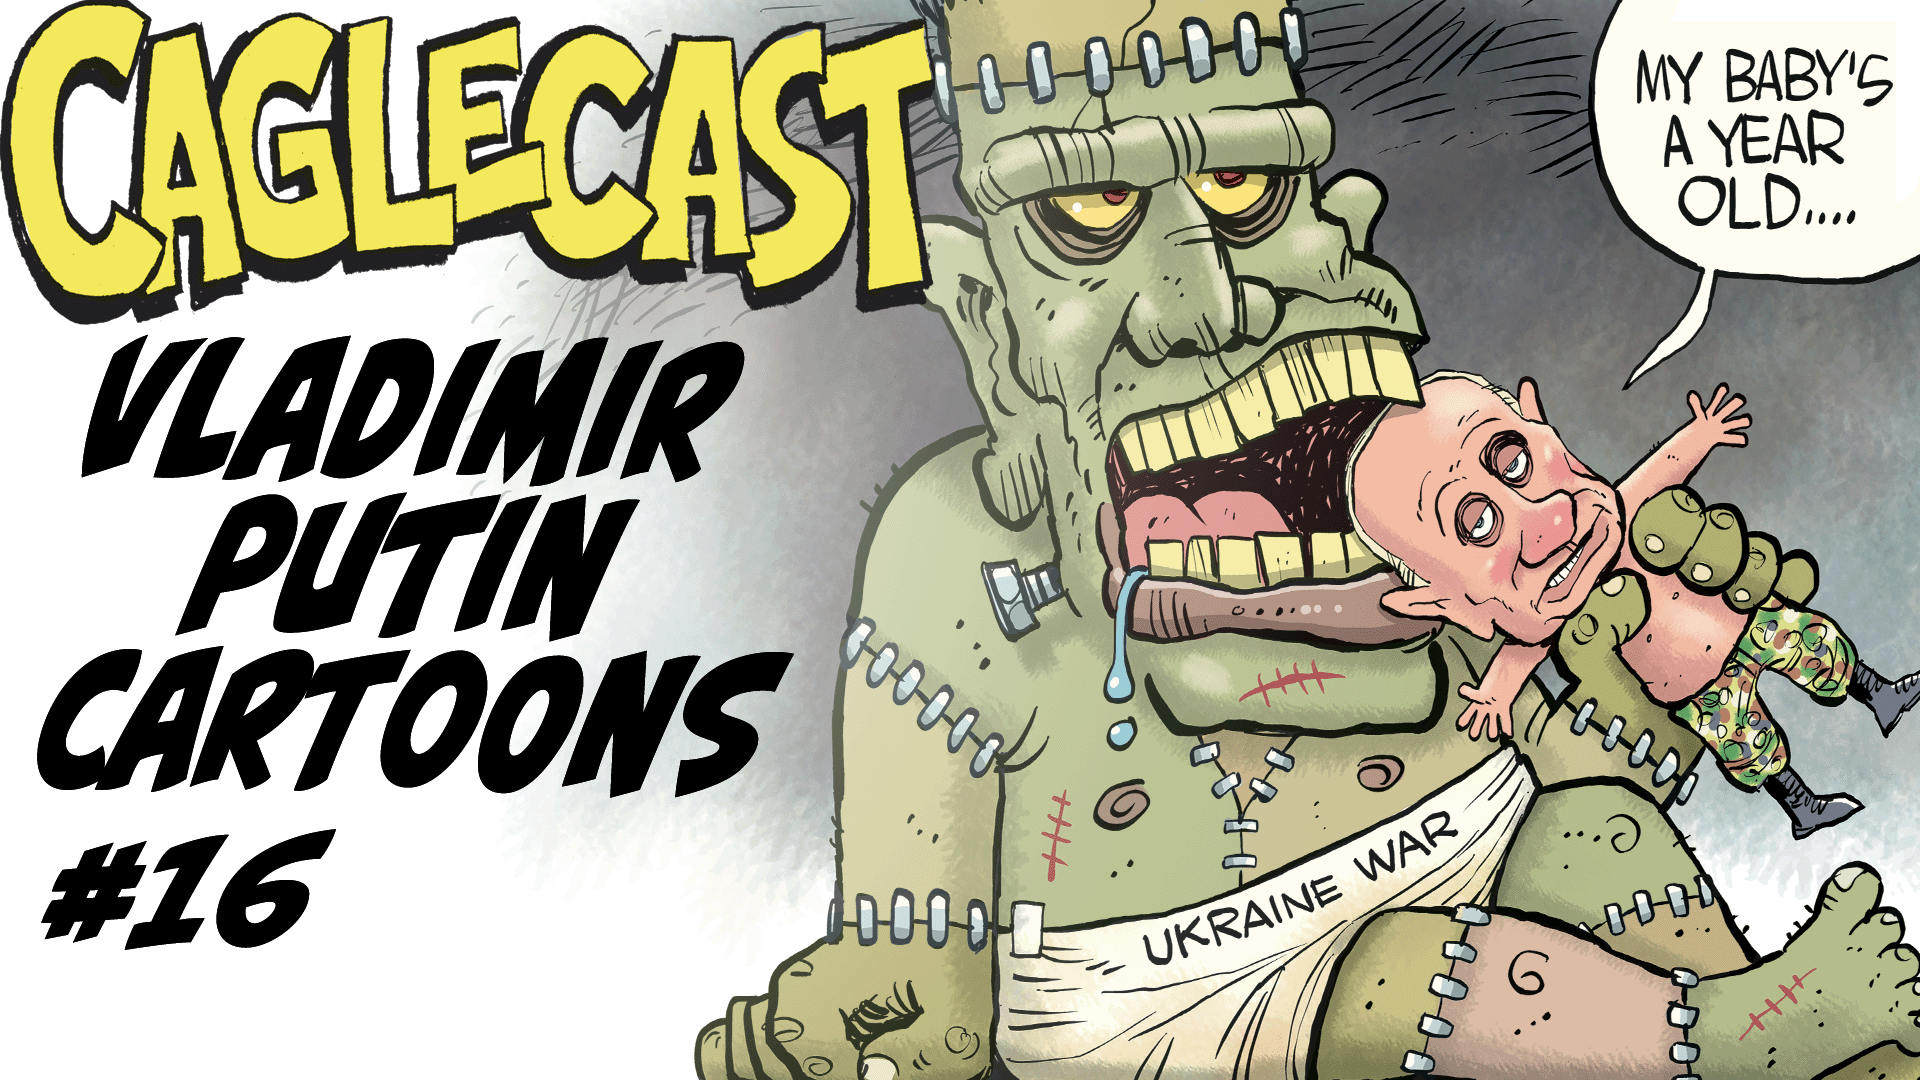 Vladimir Putin Cartoons #16 poster